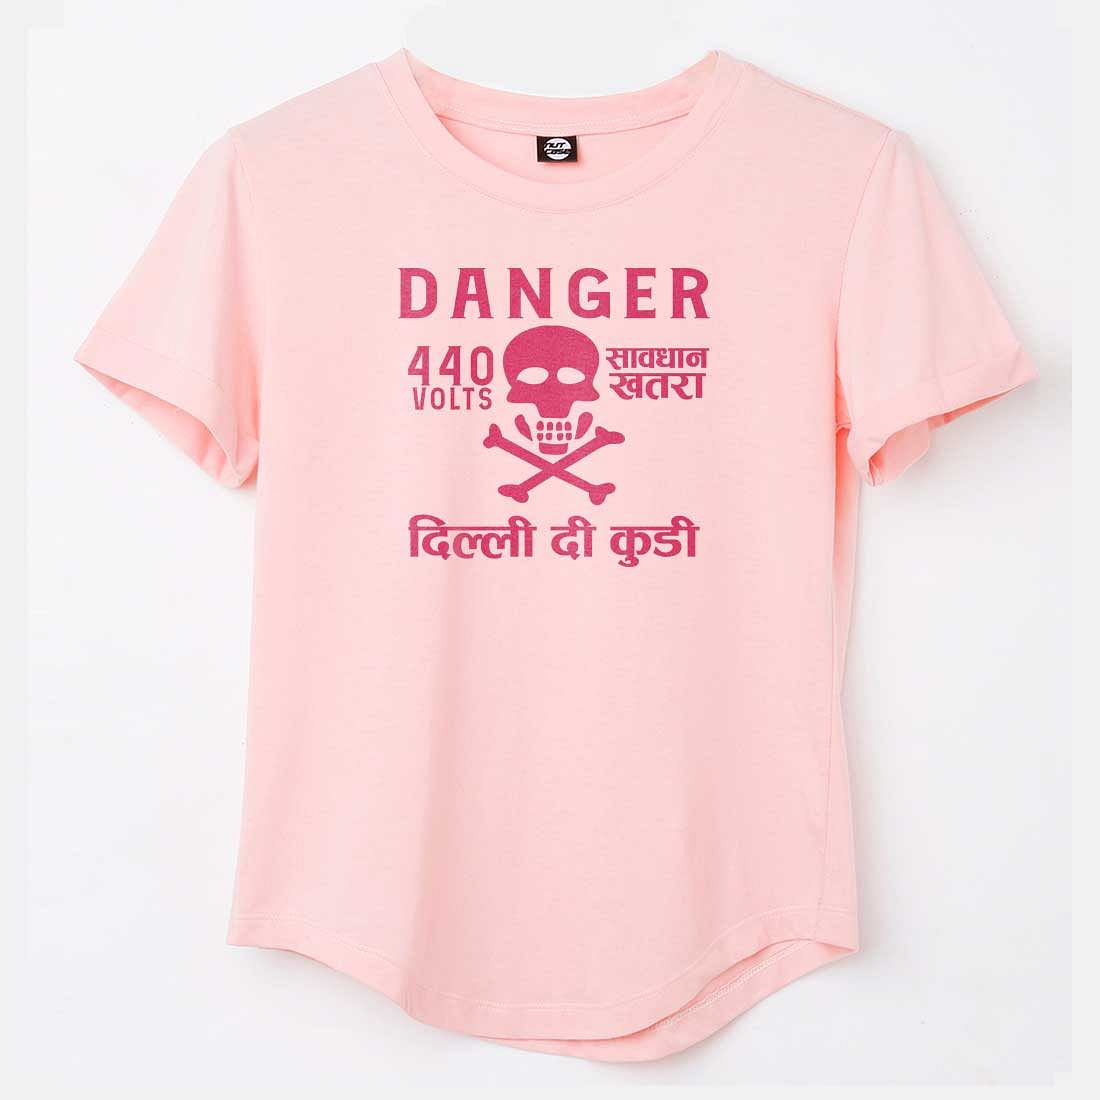 Funny Tees City Tshirts - Danger Delhi di Kuddi 44 volts Nutcase